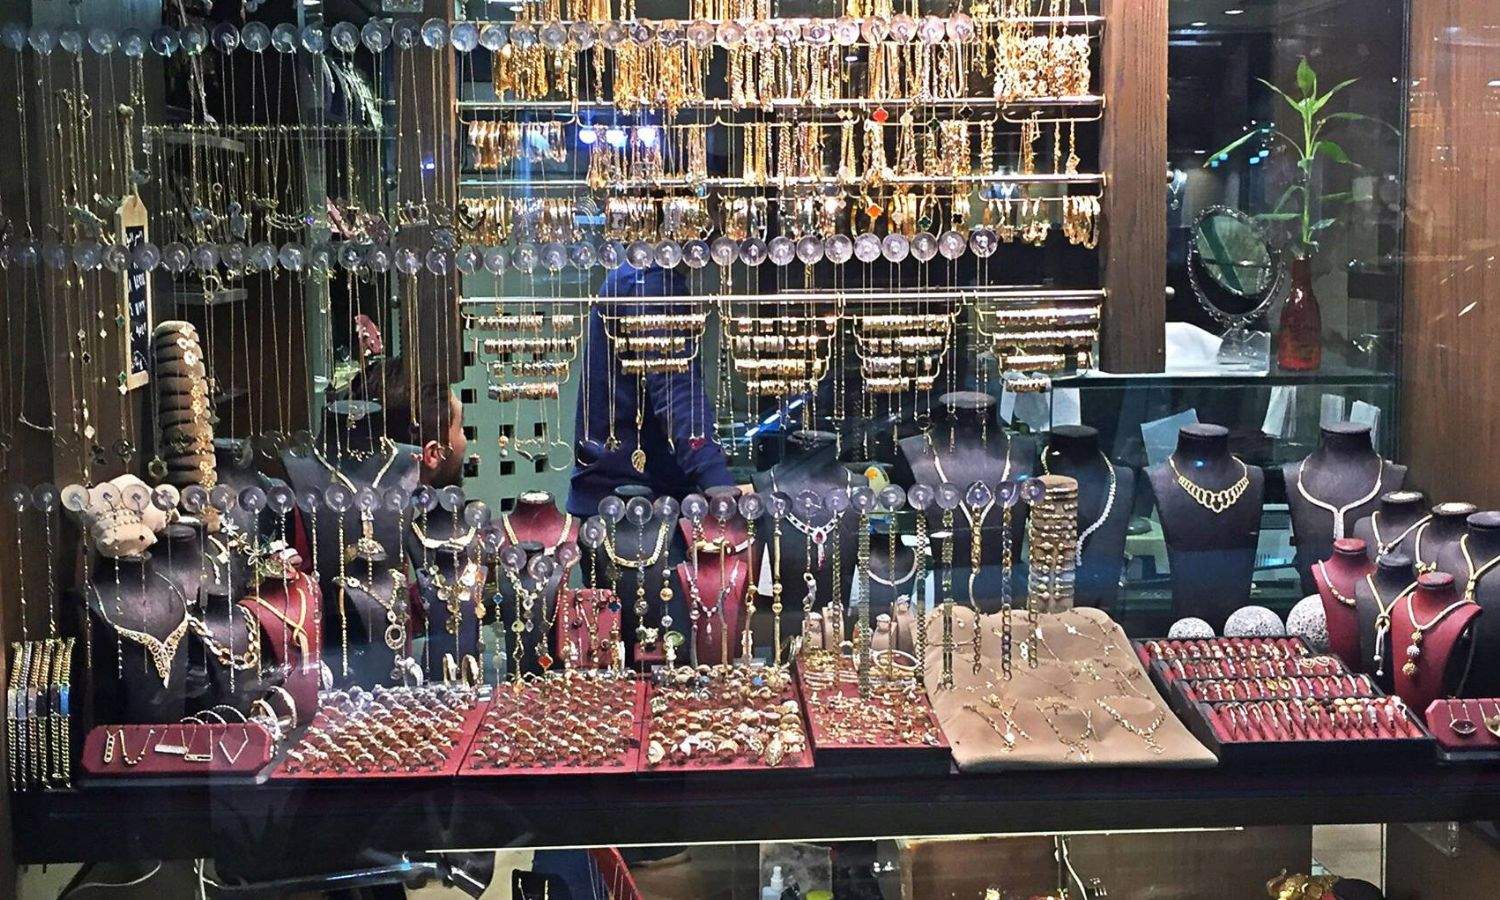 واجهة محل لبيع المجوهرات في سوق بمدينة اللاذقية شمال غربي سوريا- 4 من كانون الأول 2018 (مجوهرات قمر/ فيس بوك)